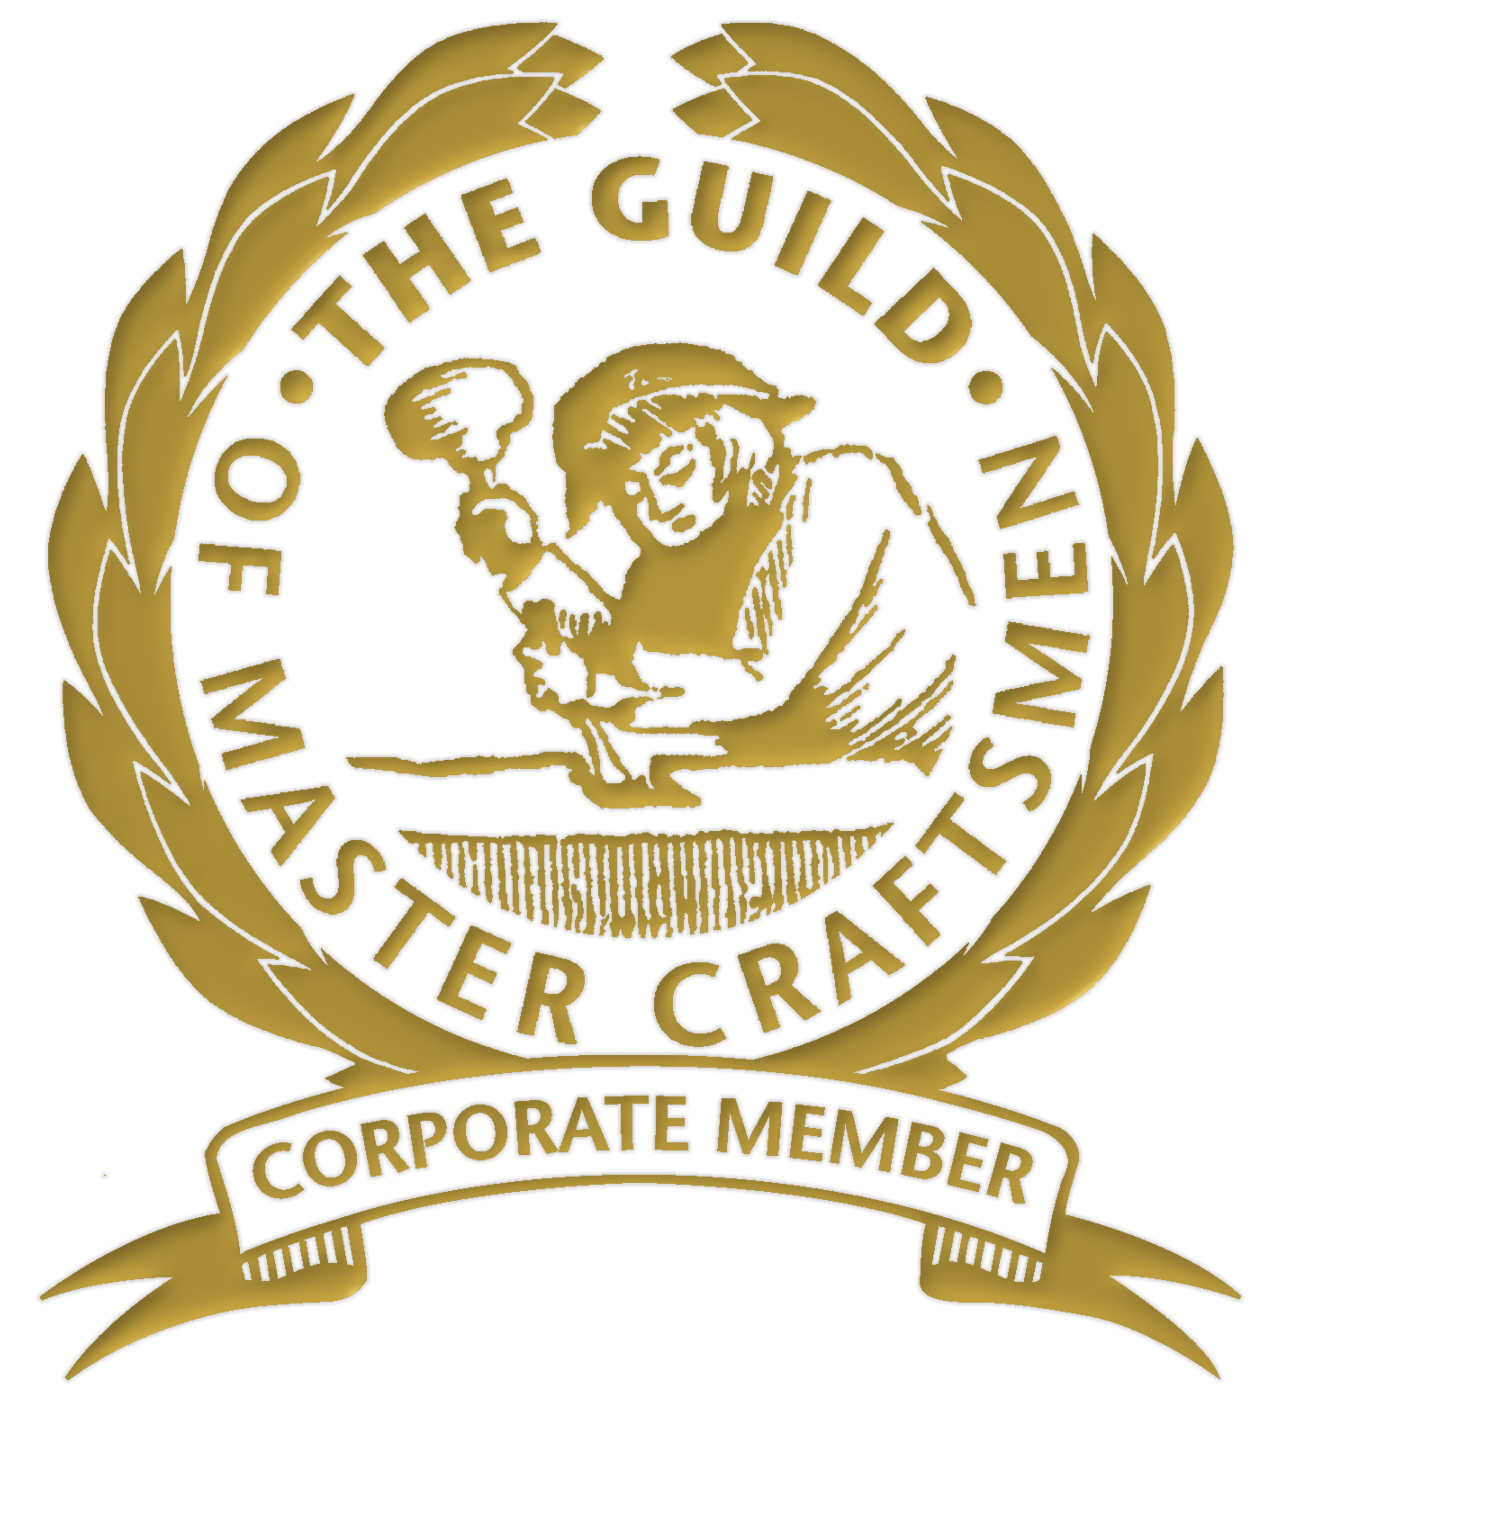 the guild of master craftsmen